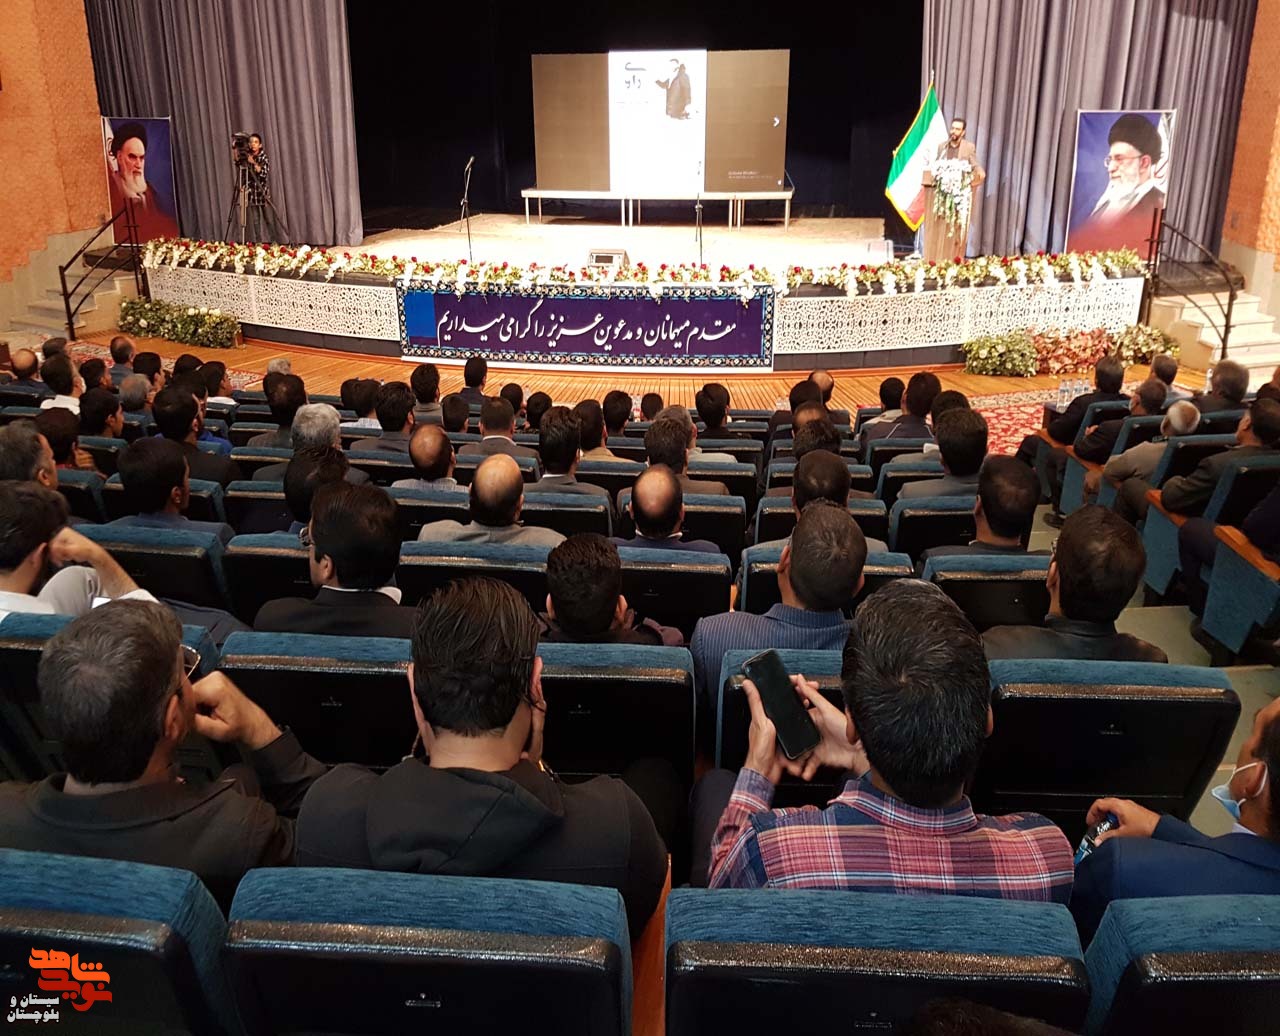 ششمین یادواره خبرنگار شهید مدافع حرم حاج محسن خزایی در تالار فردوسی دانشگاه سیستان و بلوچستان در زاهدان برگزار شد.